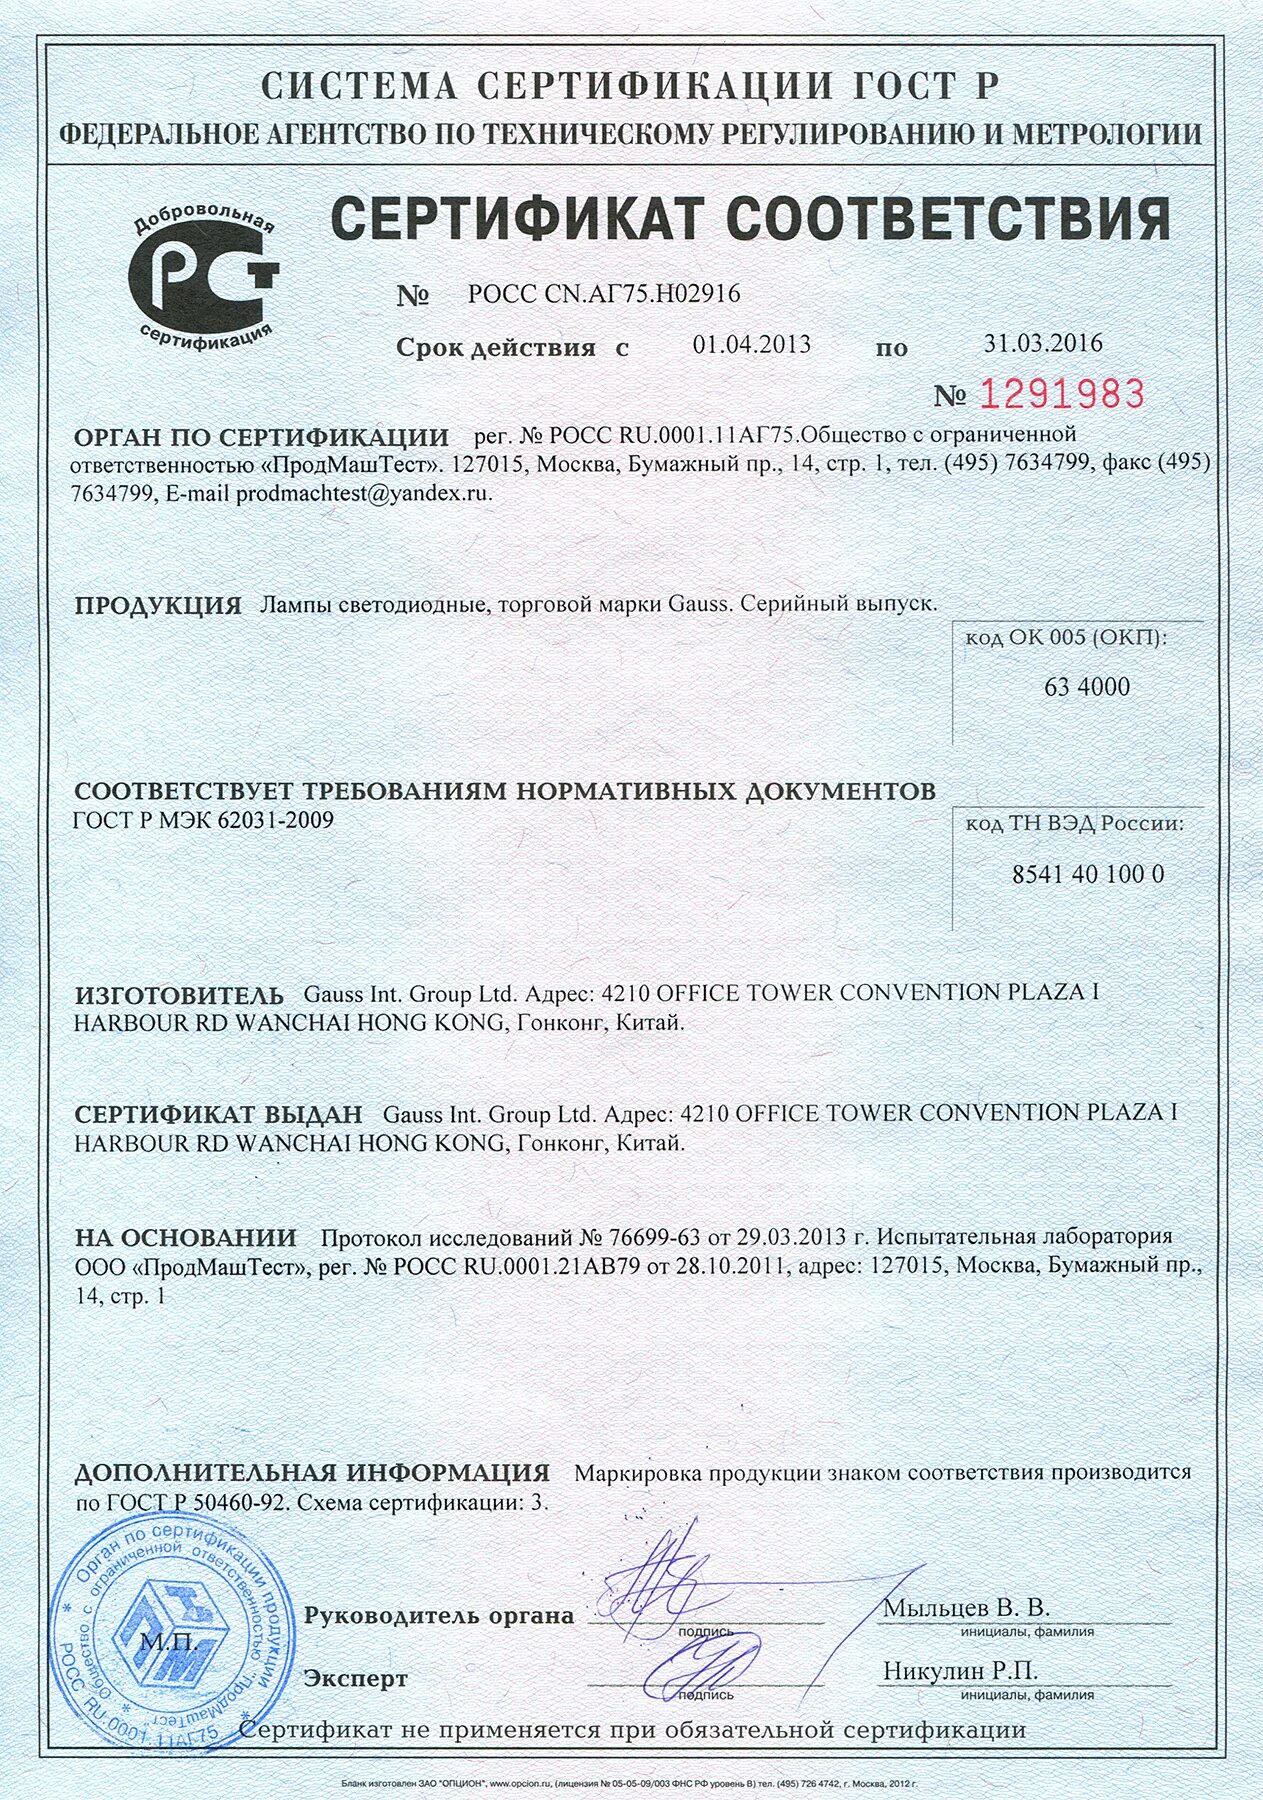 Гипсокартон ГКЛ Кнауф сертификат соответствия. Гипохлорит натрия ГОСТ 11086-76. Шпаклевка Фугенфюллер Кнауф сертификат соответствия. ПГП Кнауф сертификат соответствия.